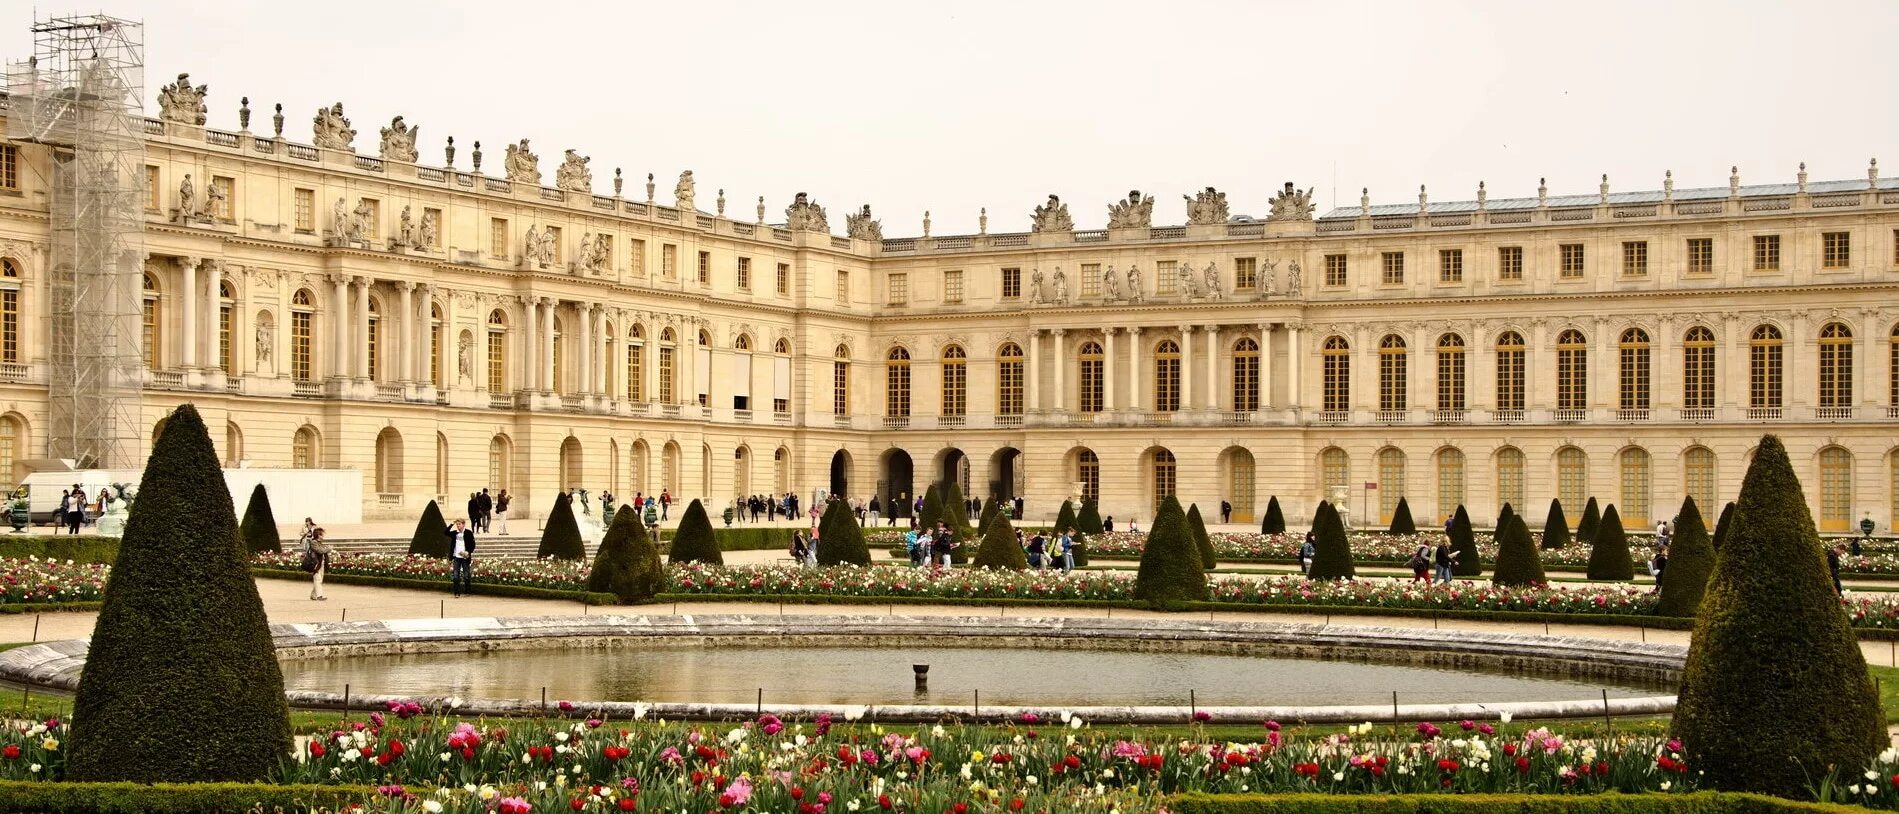 Версальский дворец дворцы Версаля. Версальский дворец Версаль Барокко. Версаль дворец Франция 18 век. Версальский дворец Версаль классицизм. Почему версаль